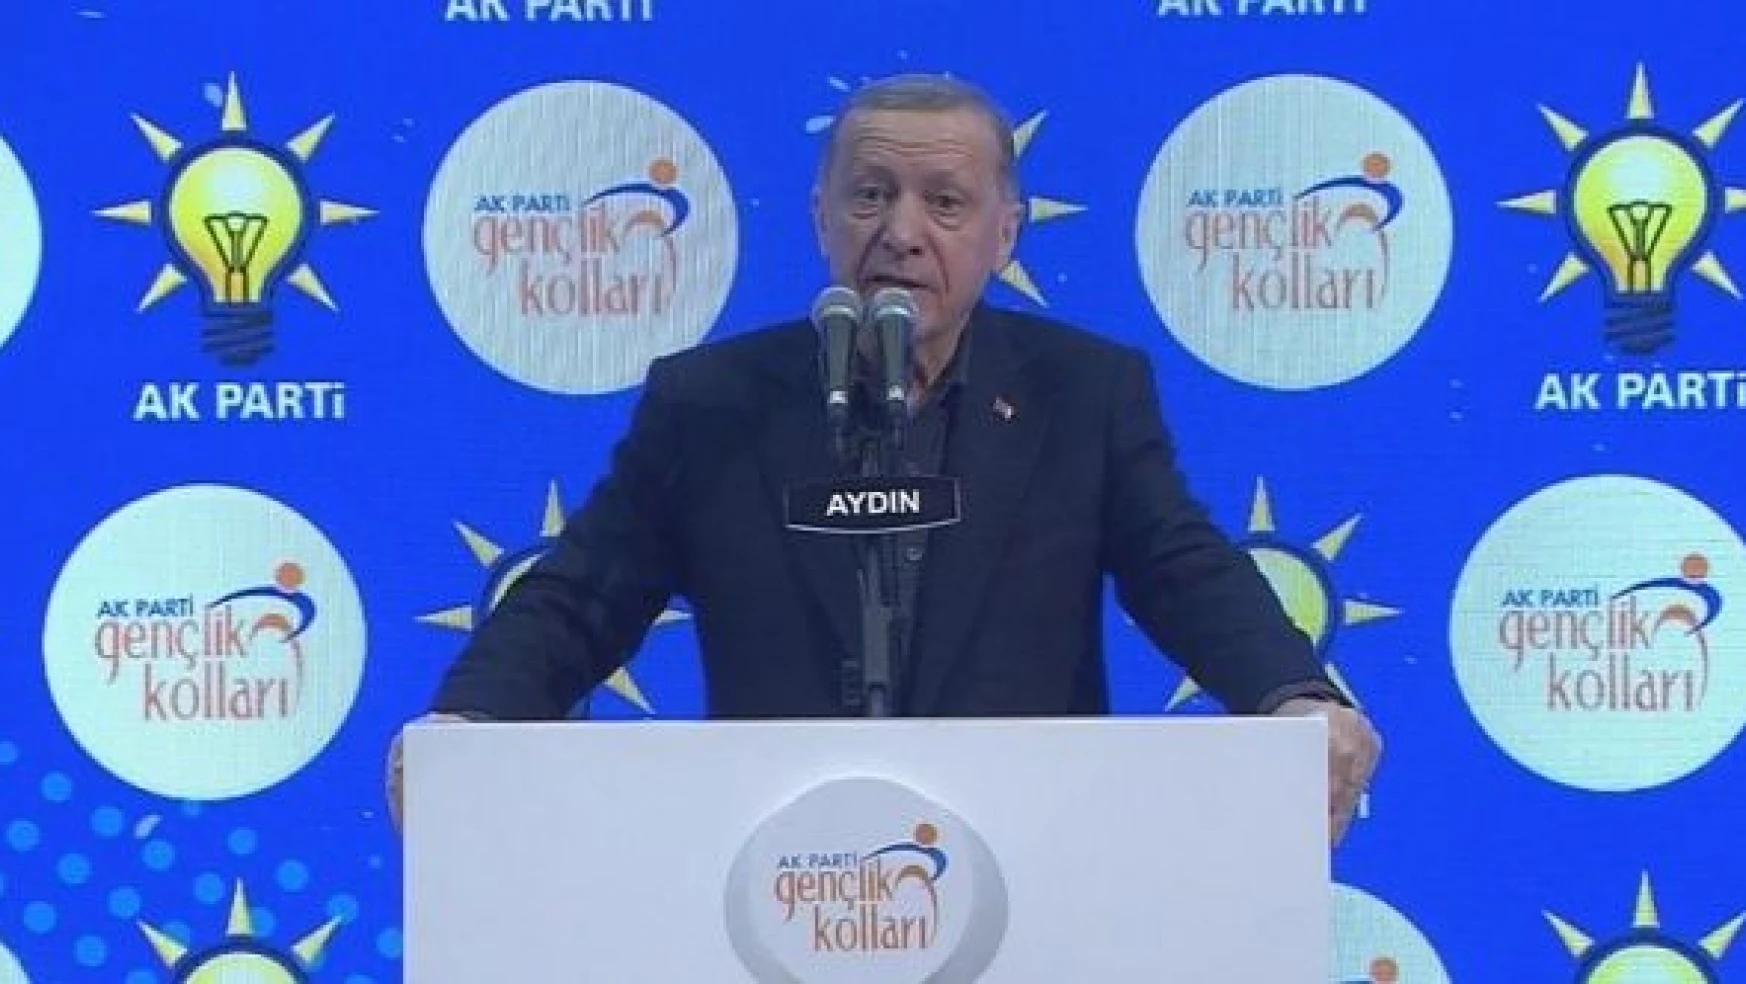 Erdoğan: 'Üniversite harçlarını kaldıran CHP değil, AK Parti iktidarıdır'